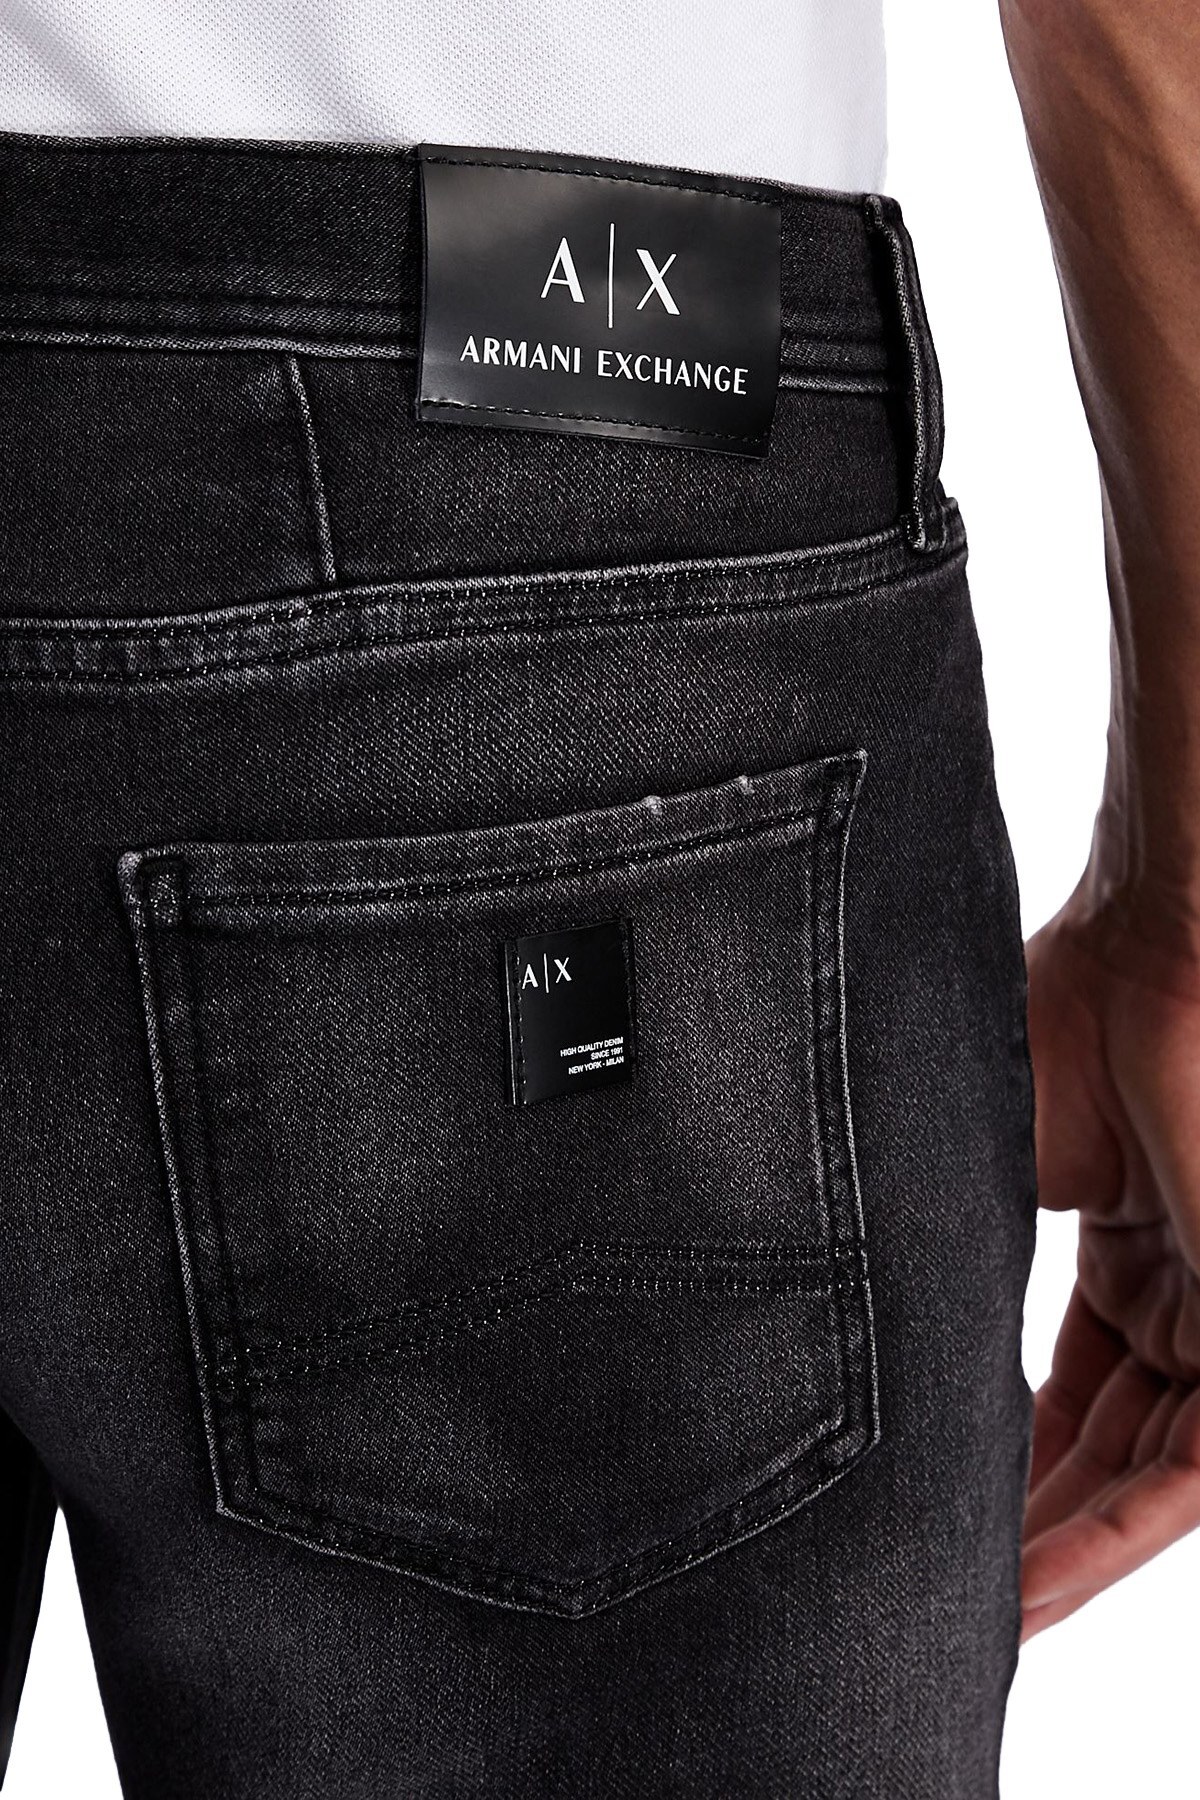 Armani Exchange Pamuklu Slim Fit J13 Jeans Erkek Kot Pantolon 3KZJ13 Z1ETZ 0903 GRİ